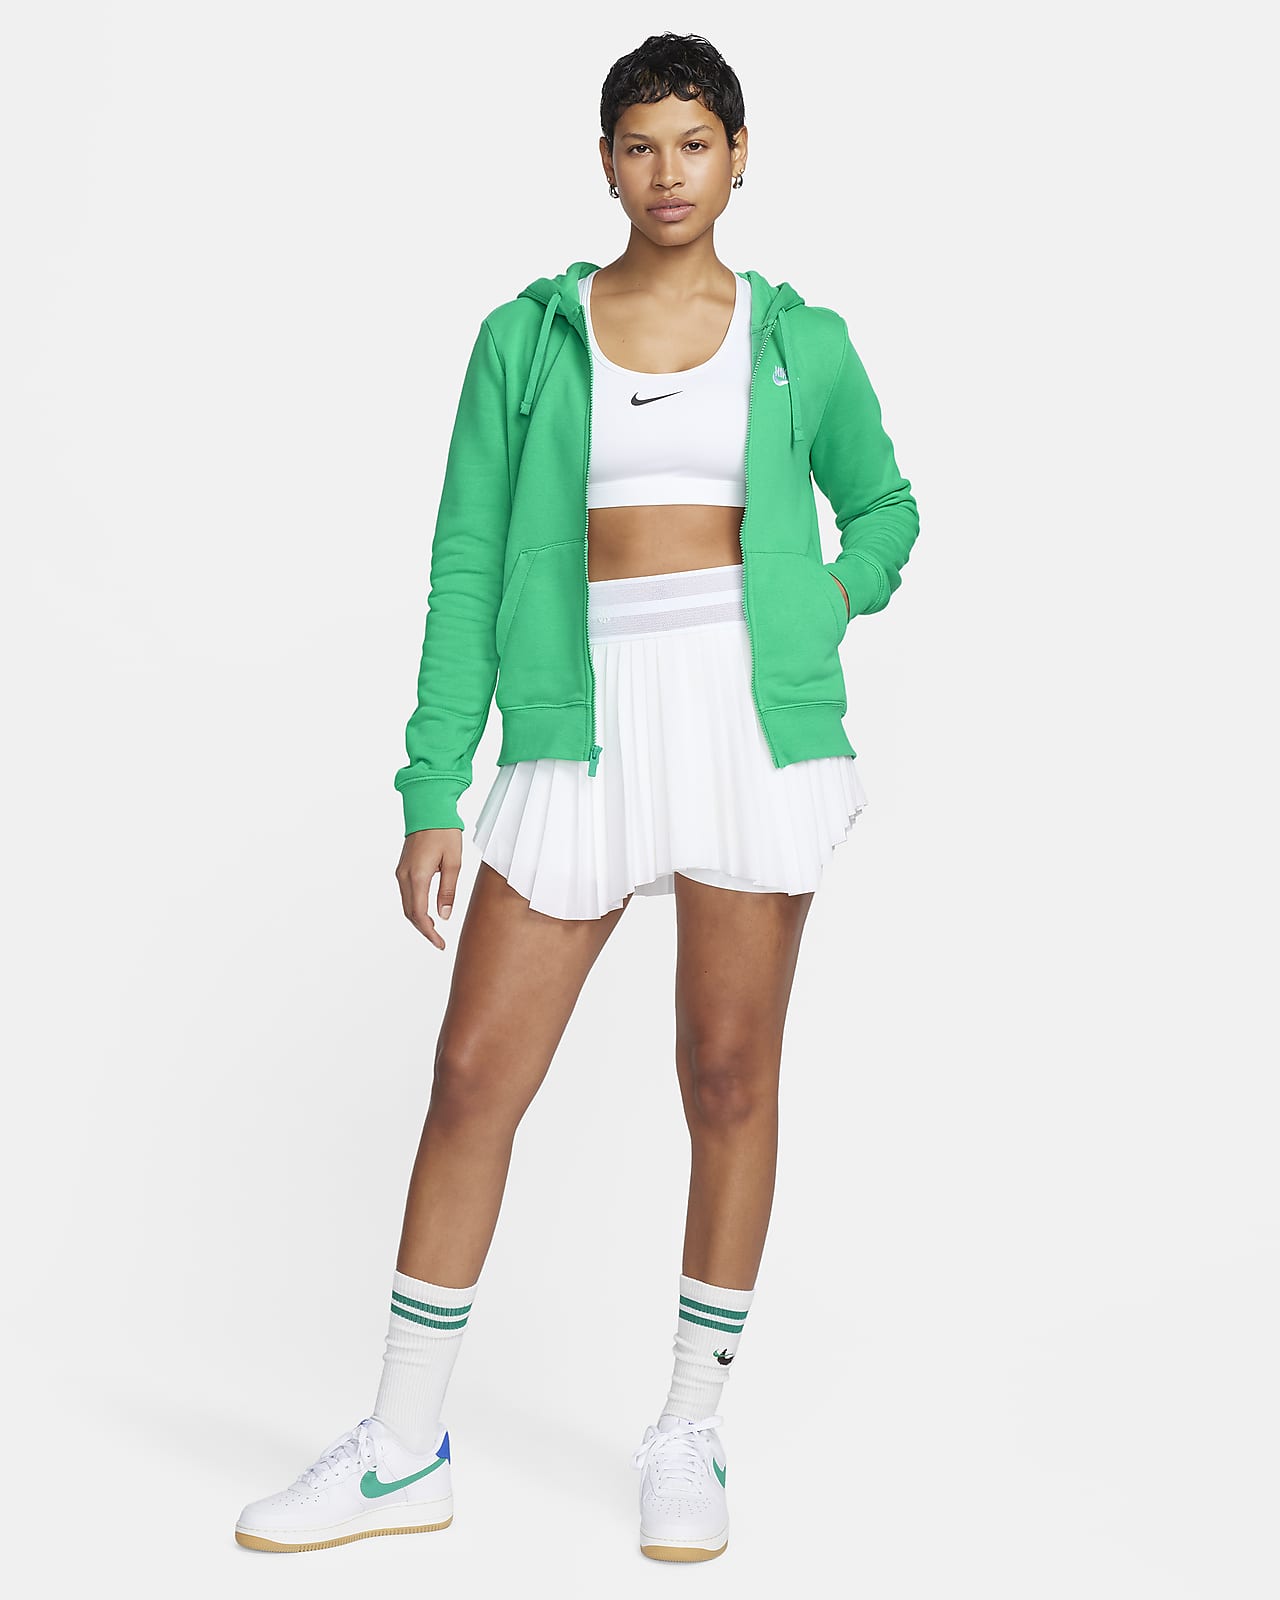 Women's Hoodies & Sweatshirts - Nike, ELL&VOO & more - rebel